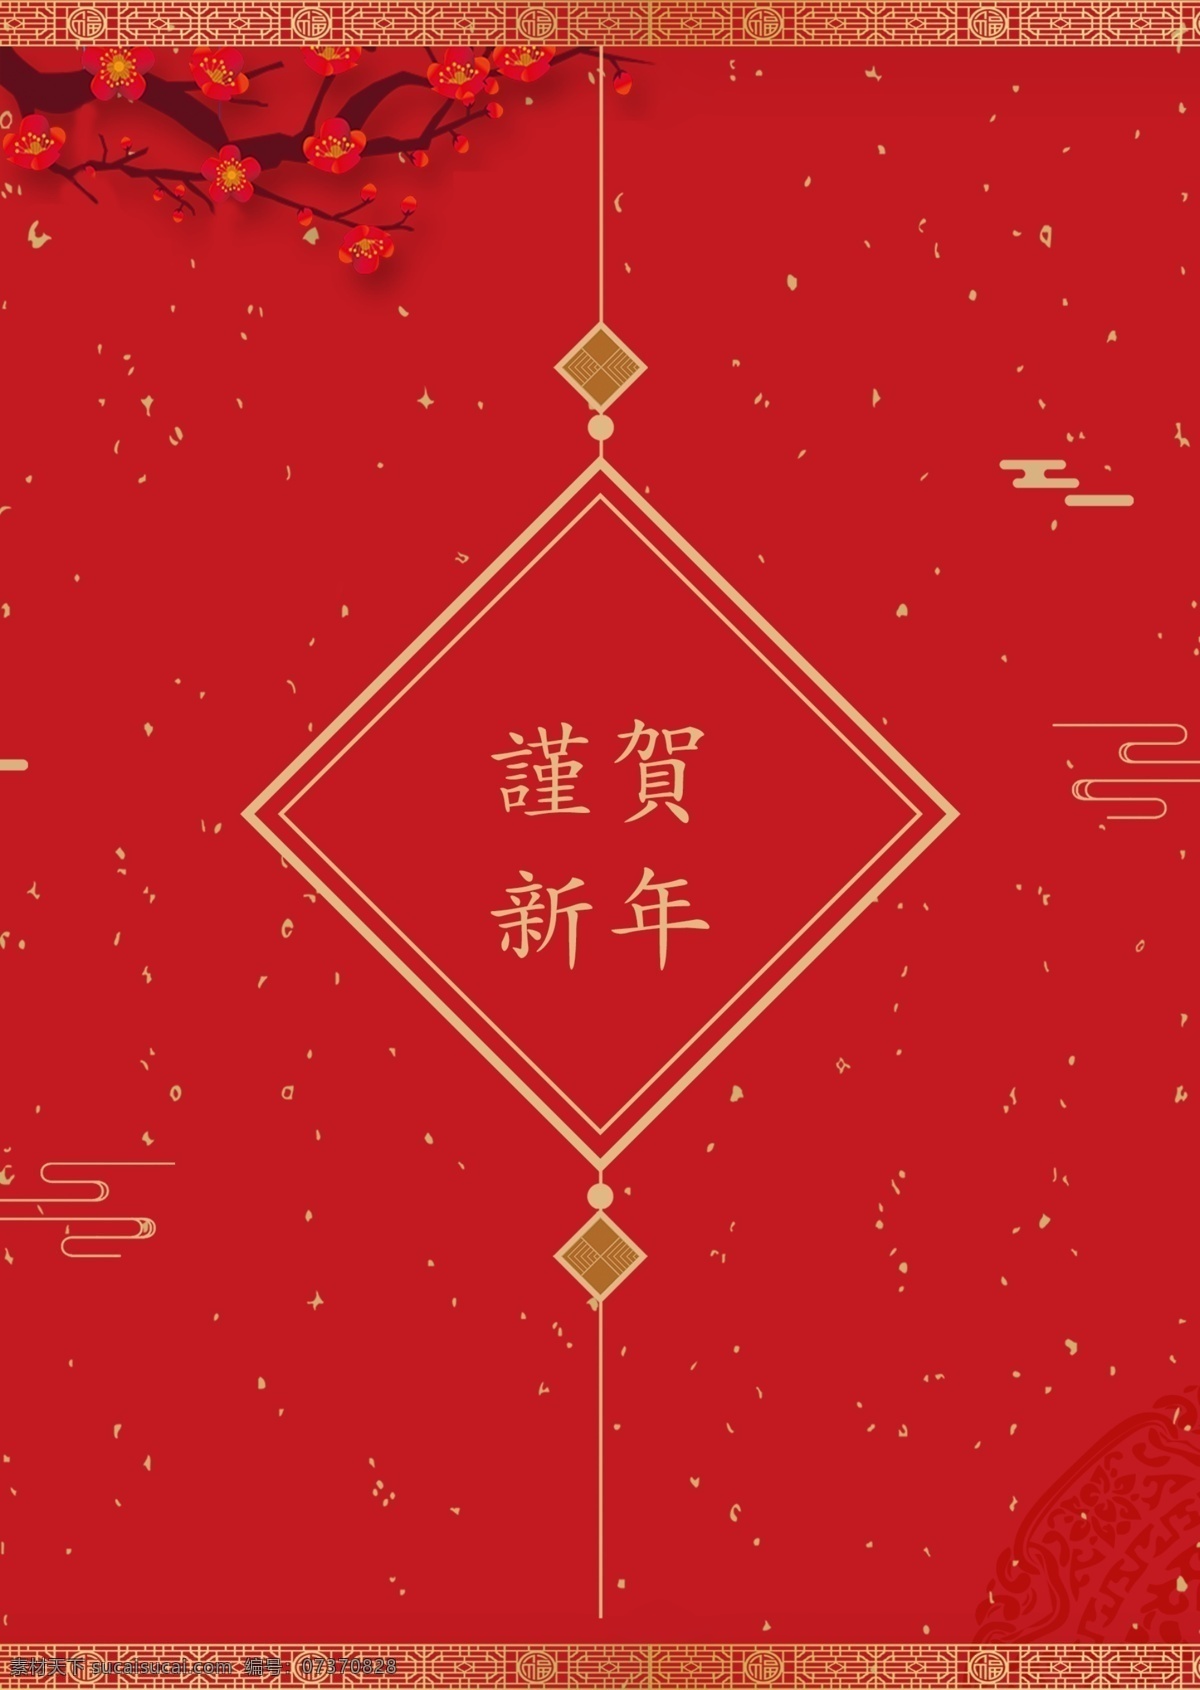 红色 传统 中国结 新年 海报 雪花儿 花花 上运 中国风格